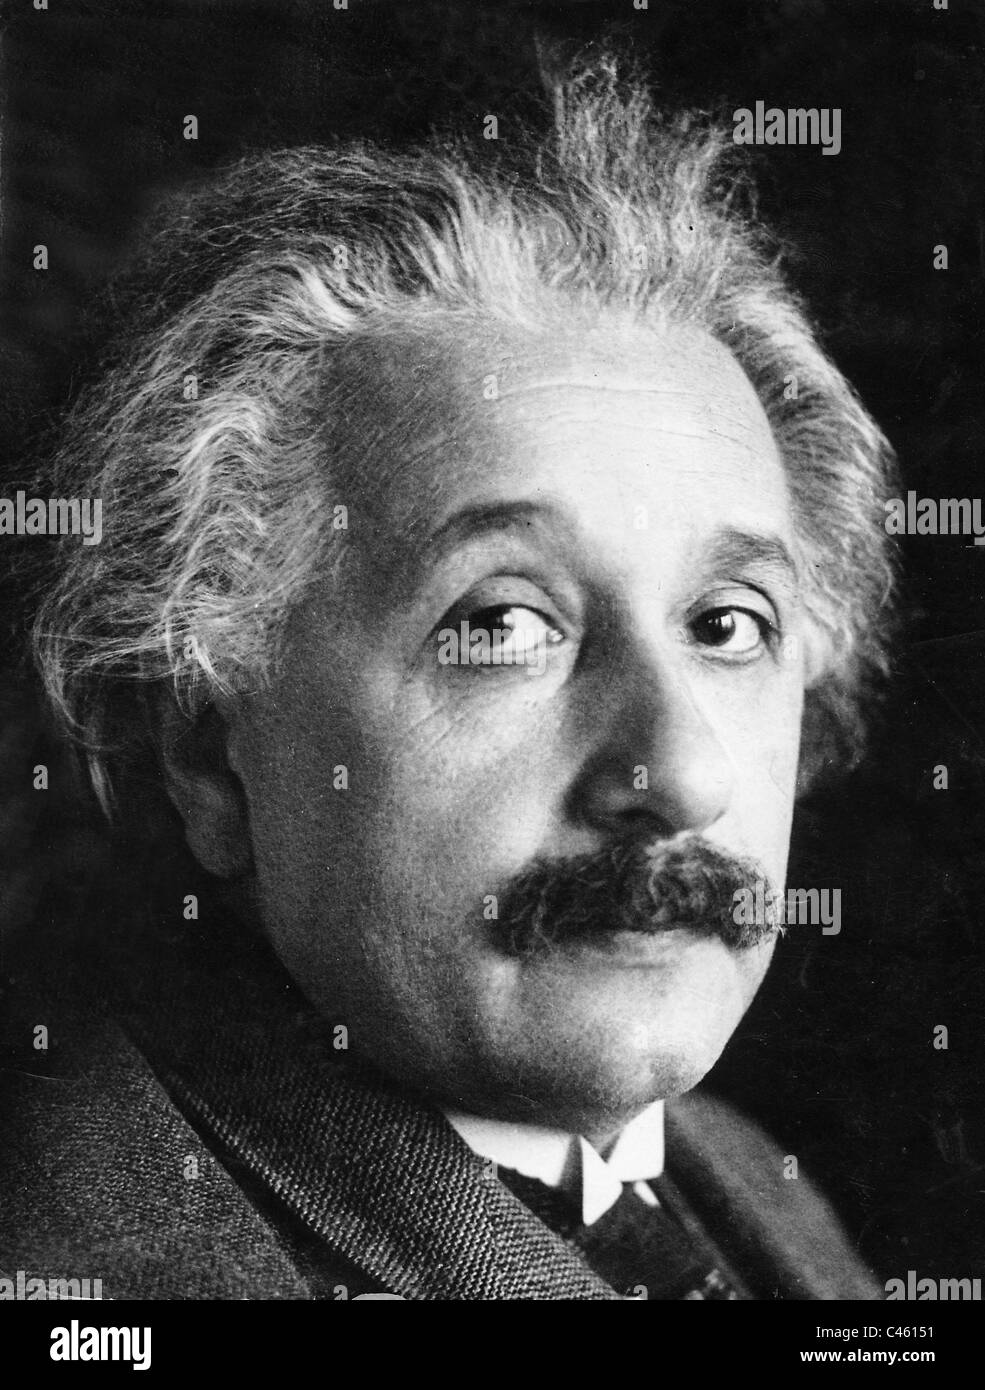 4 гениальных человека. Великие ученые Эйнштейн.